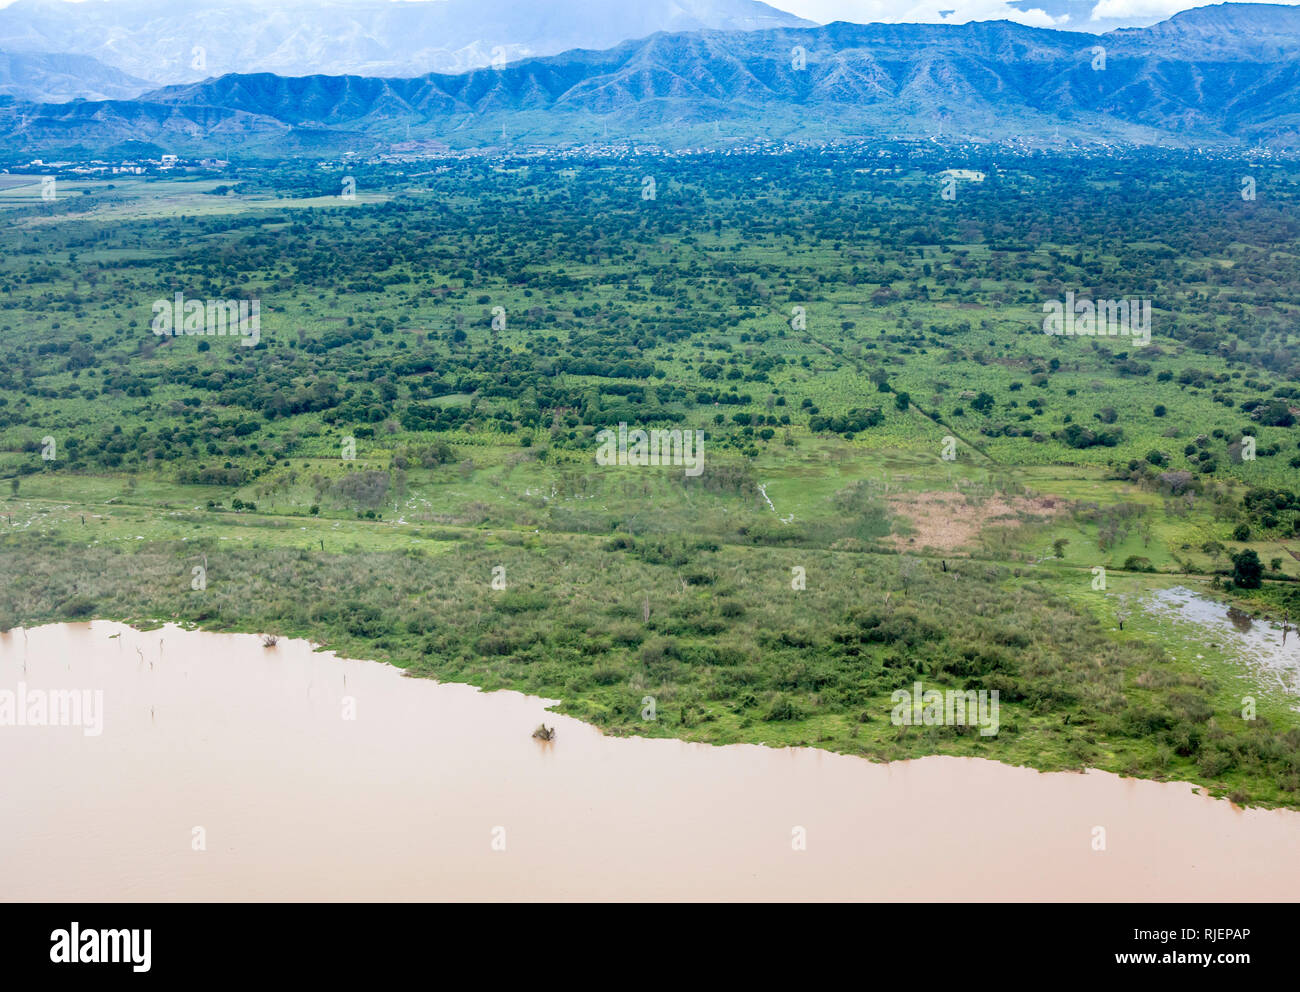 Vista aérea de la orilla del lago Abaya y plantaciones cerca de Arba Minch, Etiopía. Foto de stock